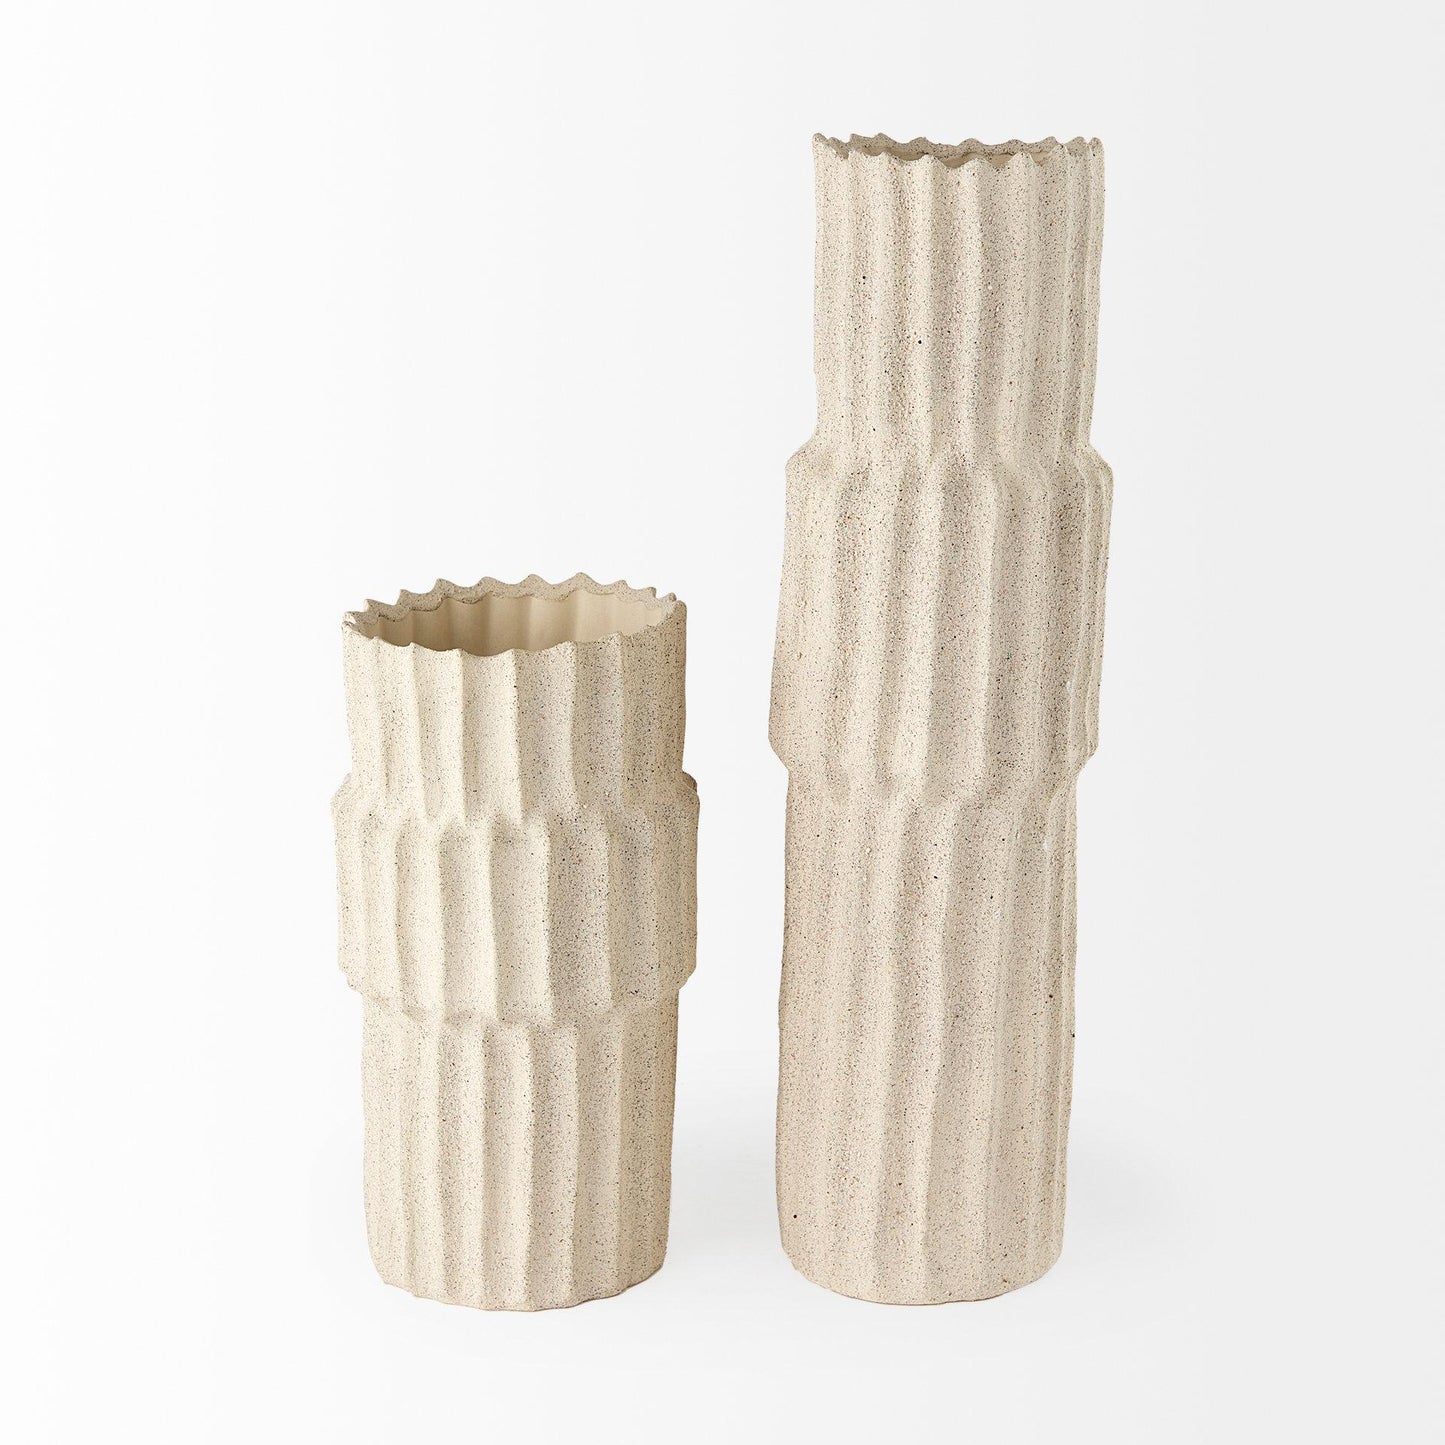 Cardon 14.4H Cream Ceramic Vase